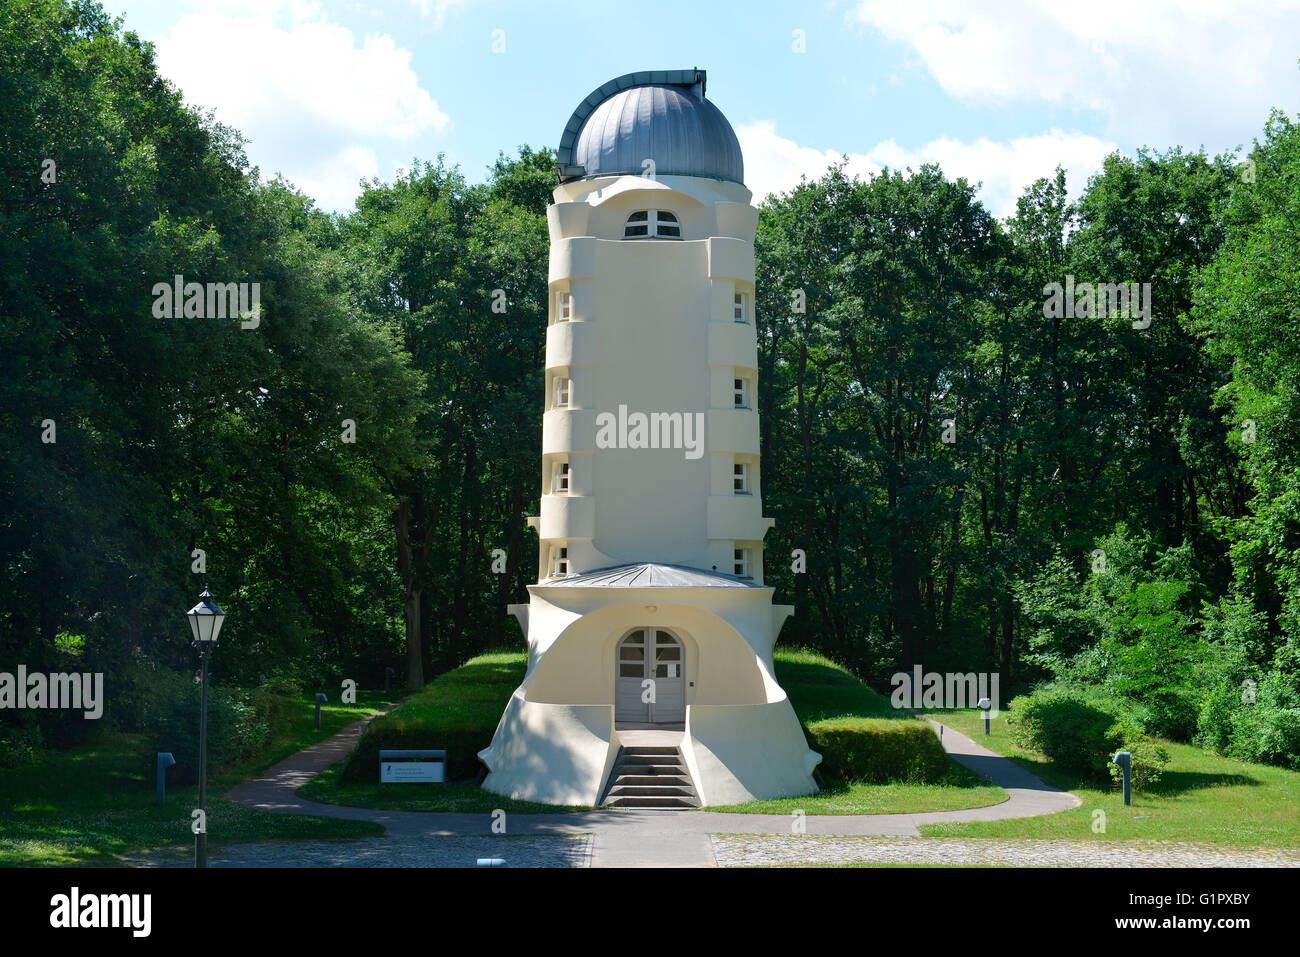 Einstein tower, Einsteinturm, Telegrafenberg, Potsdam, Brandenburg, Germany Stock Photo